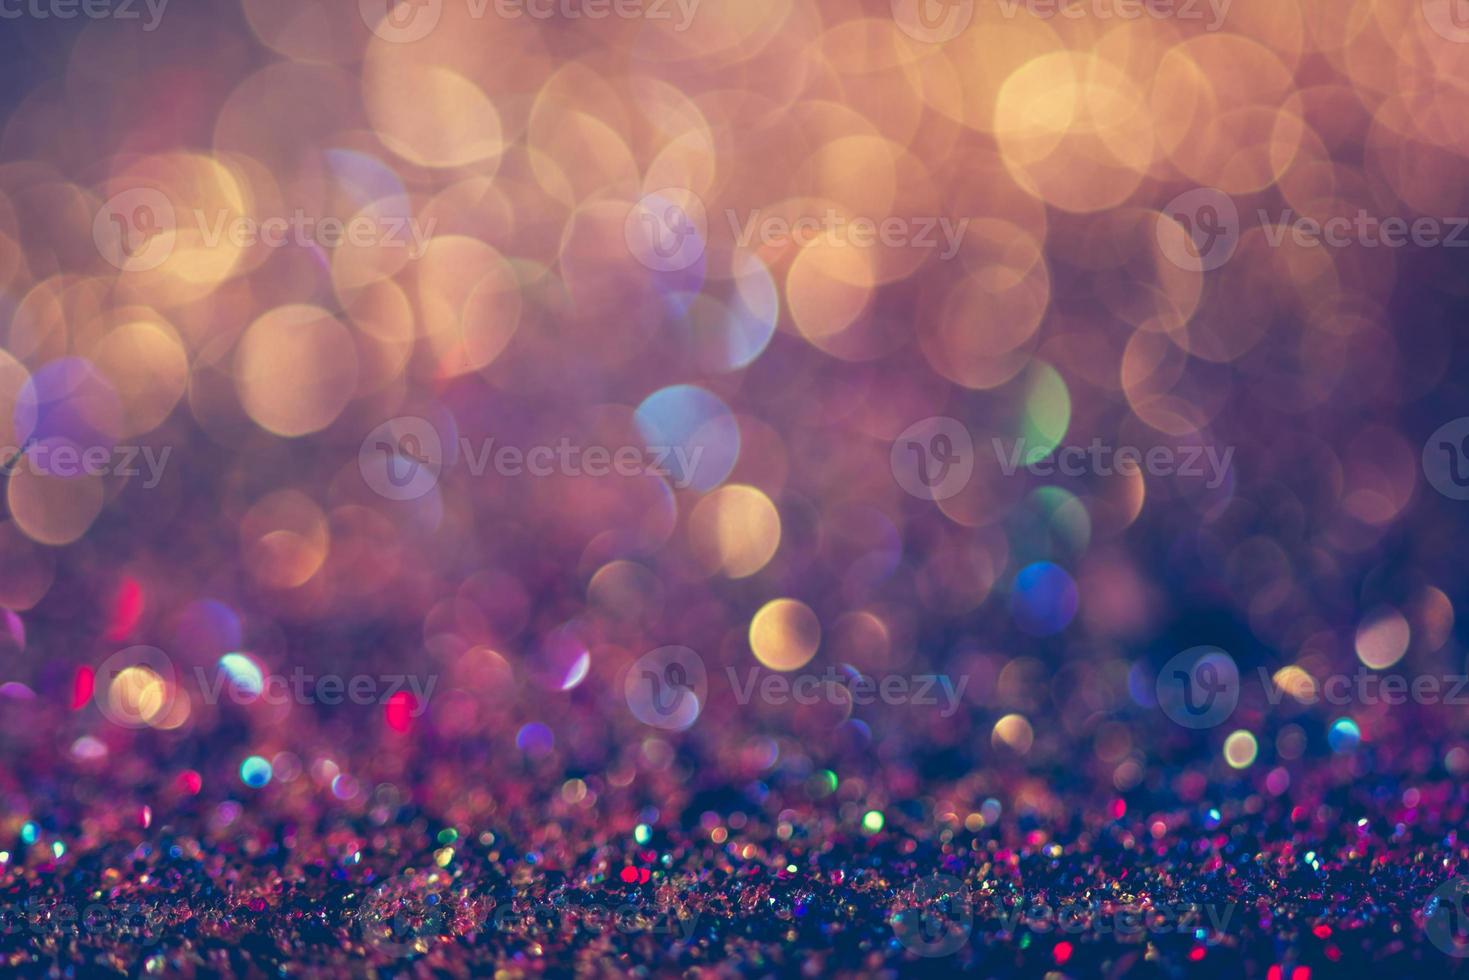 bokeh brillo colorido fondo abstracto borroso para cumpleaños, aniversario, boda, nochevieja o navidad foto